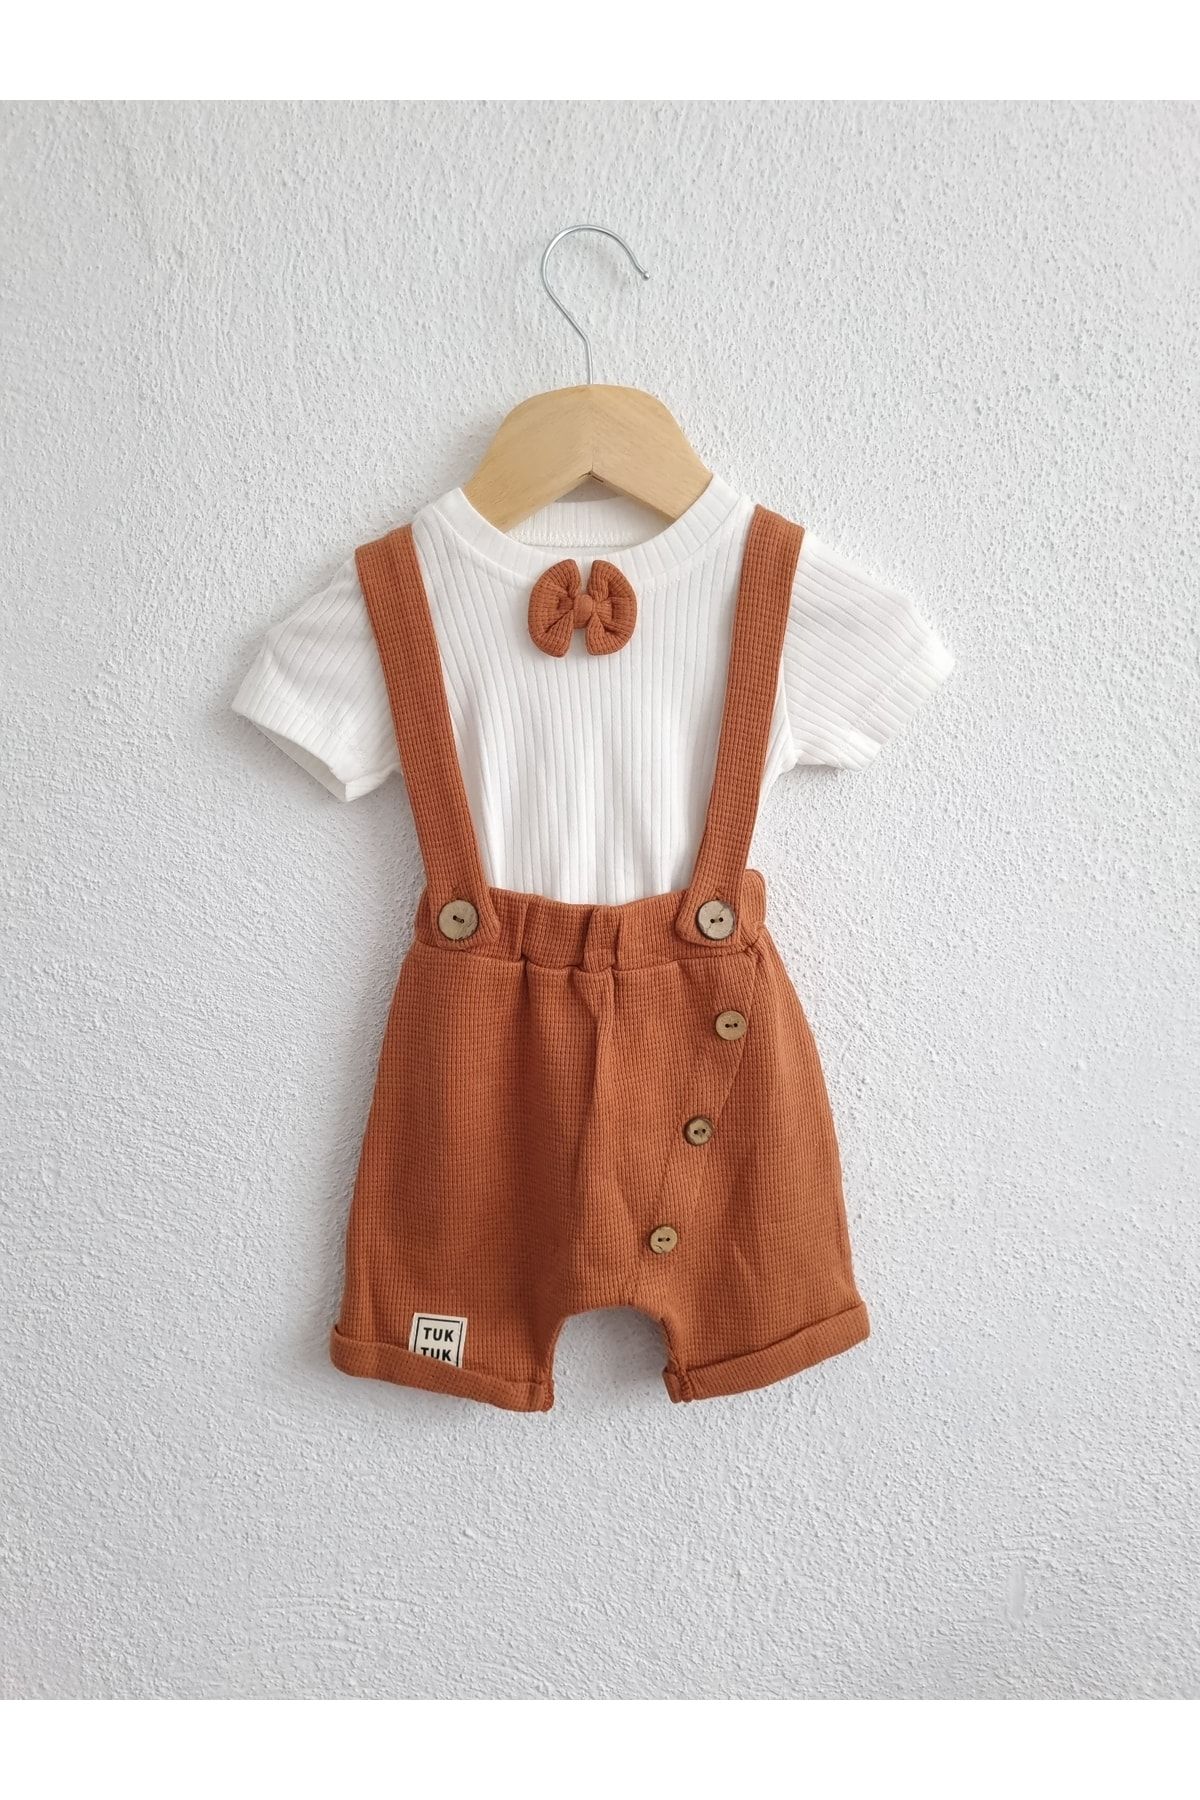 AyCaTa Erkek Bebek Papyonlu Düğme Detaylı T-shirt Salopet Ikili Takım